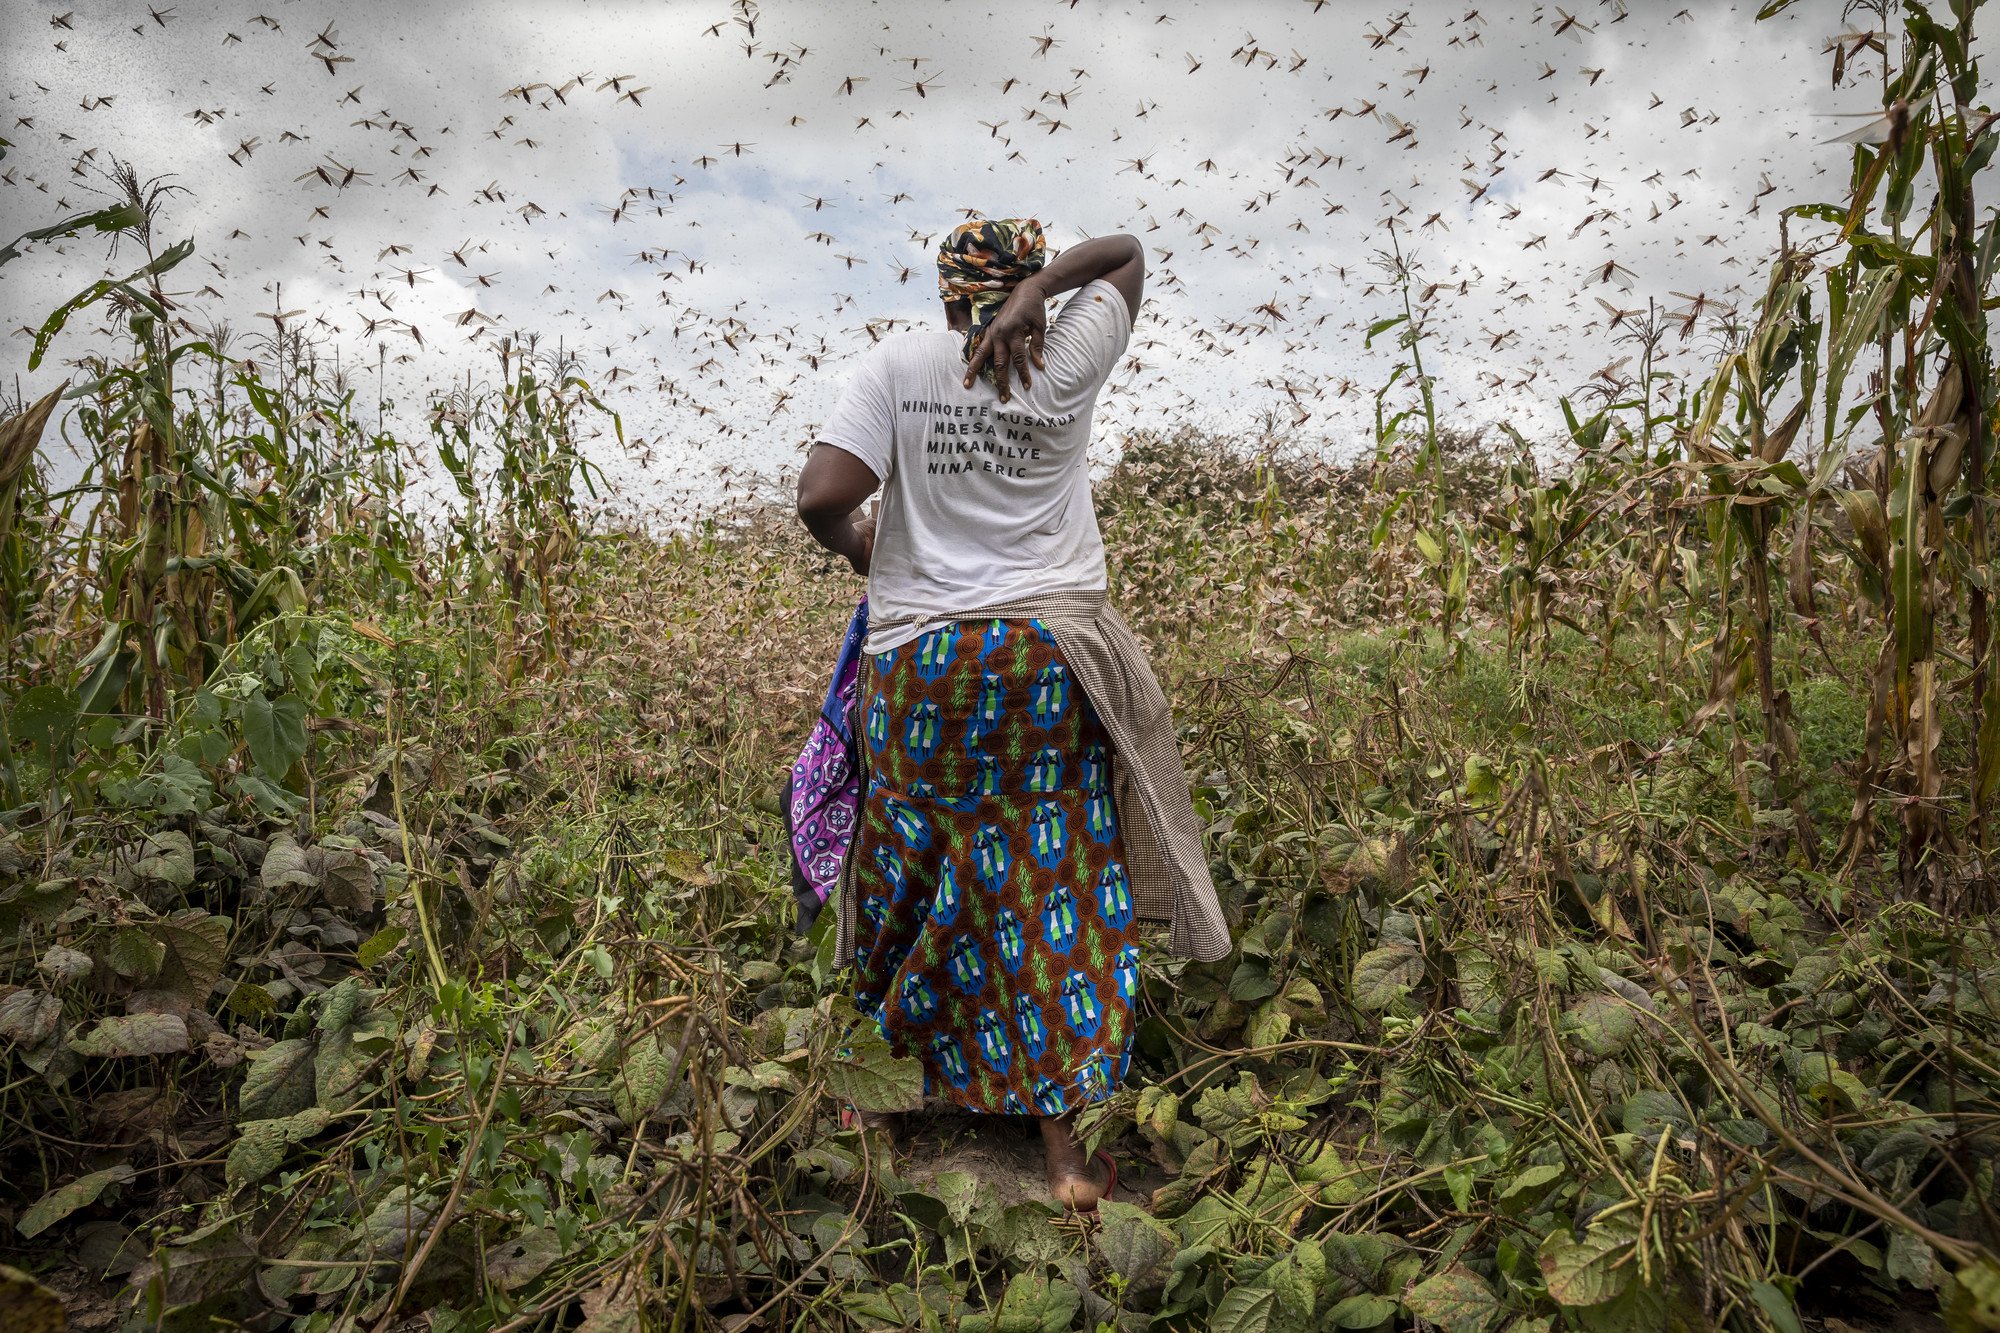 多個非洲國家的農牧業原本已飽受蝗蟲問題困擾，疫情令公共運輸中斷，滅蟲劑以至農產品等的供應亦通通暫停。非洲開發銀行估計，疫情將會令非洲國家今年的國內生產總值合共減少最少1千5百億美元。（攝影︰Petterik Wiggers / 樂施會）